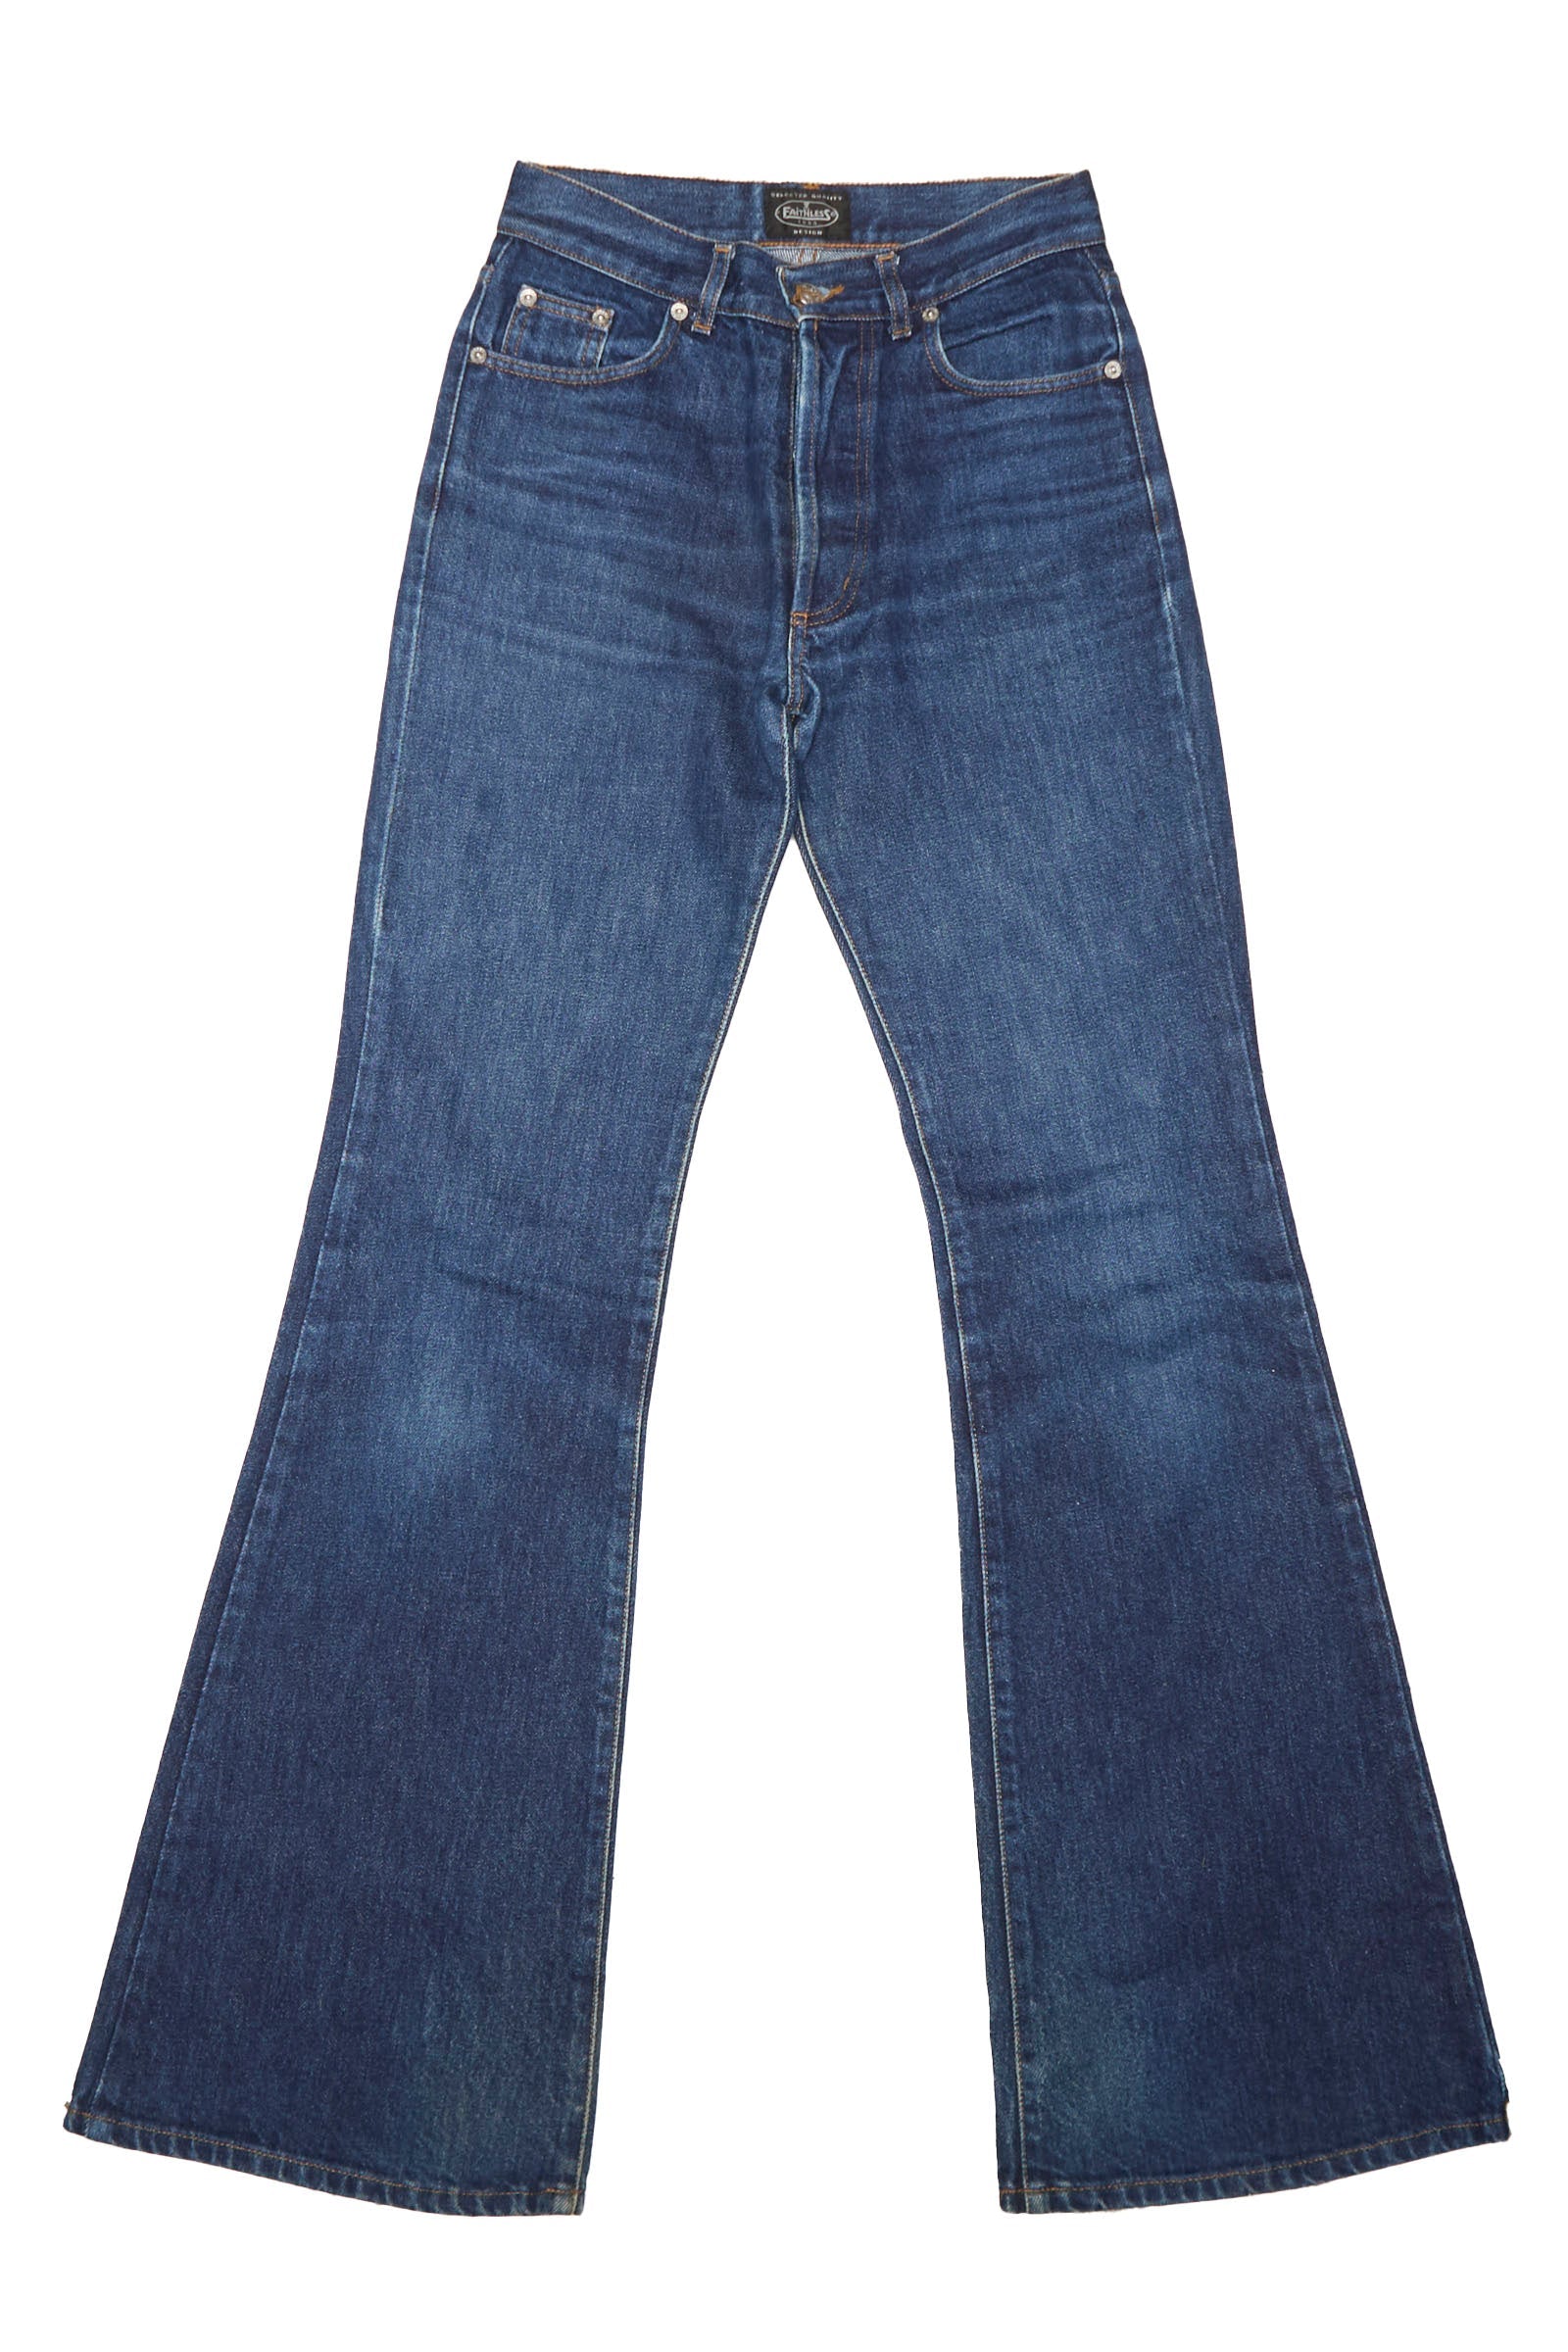 Boot Cut Denim Jeans - W24" L31"